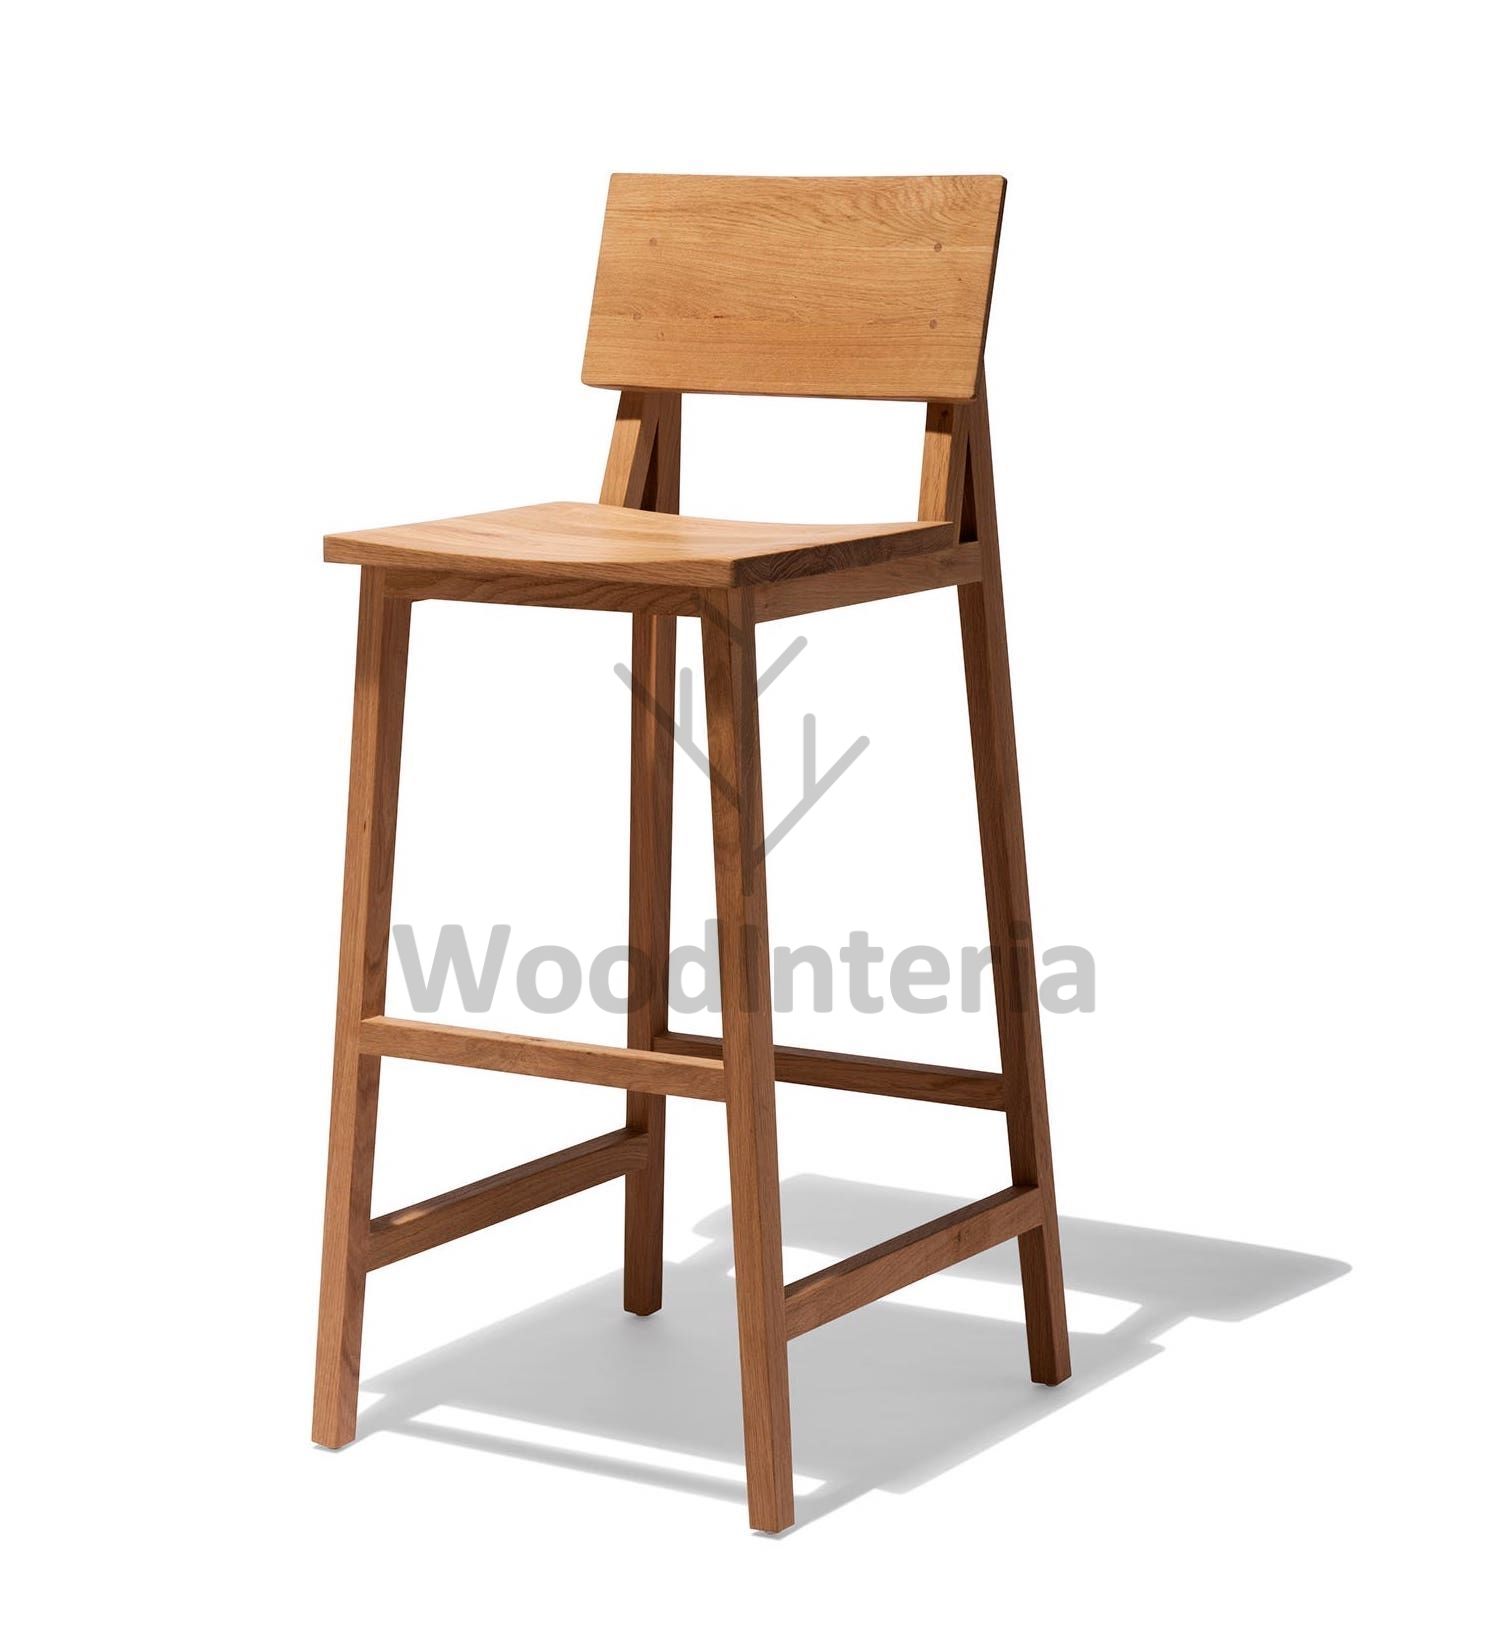 фото барный стул pronto 75 в интерьере лофт эко | WoodInteria